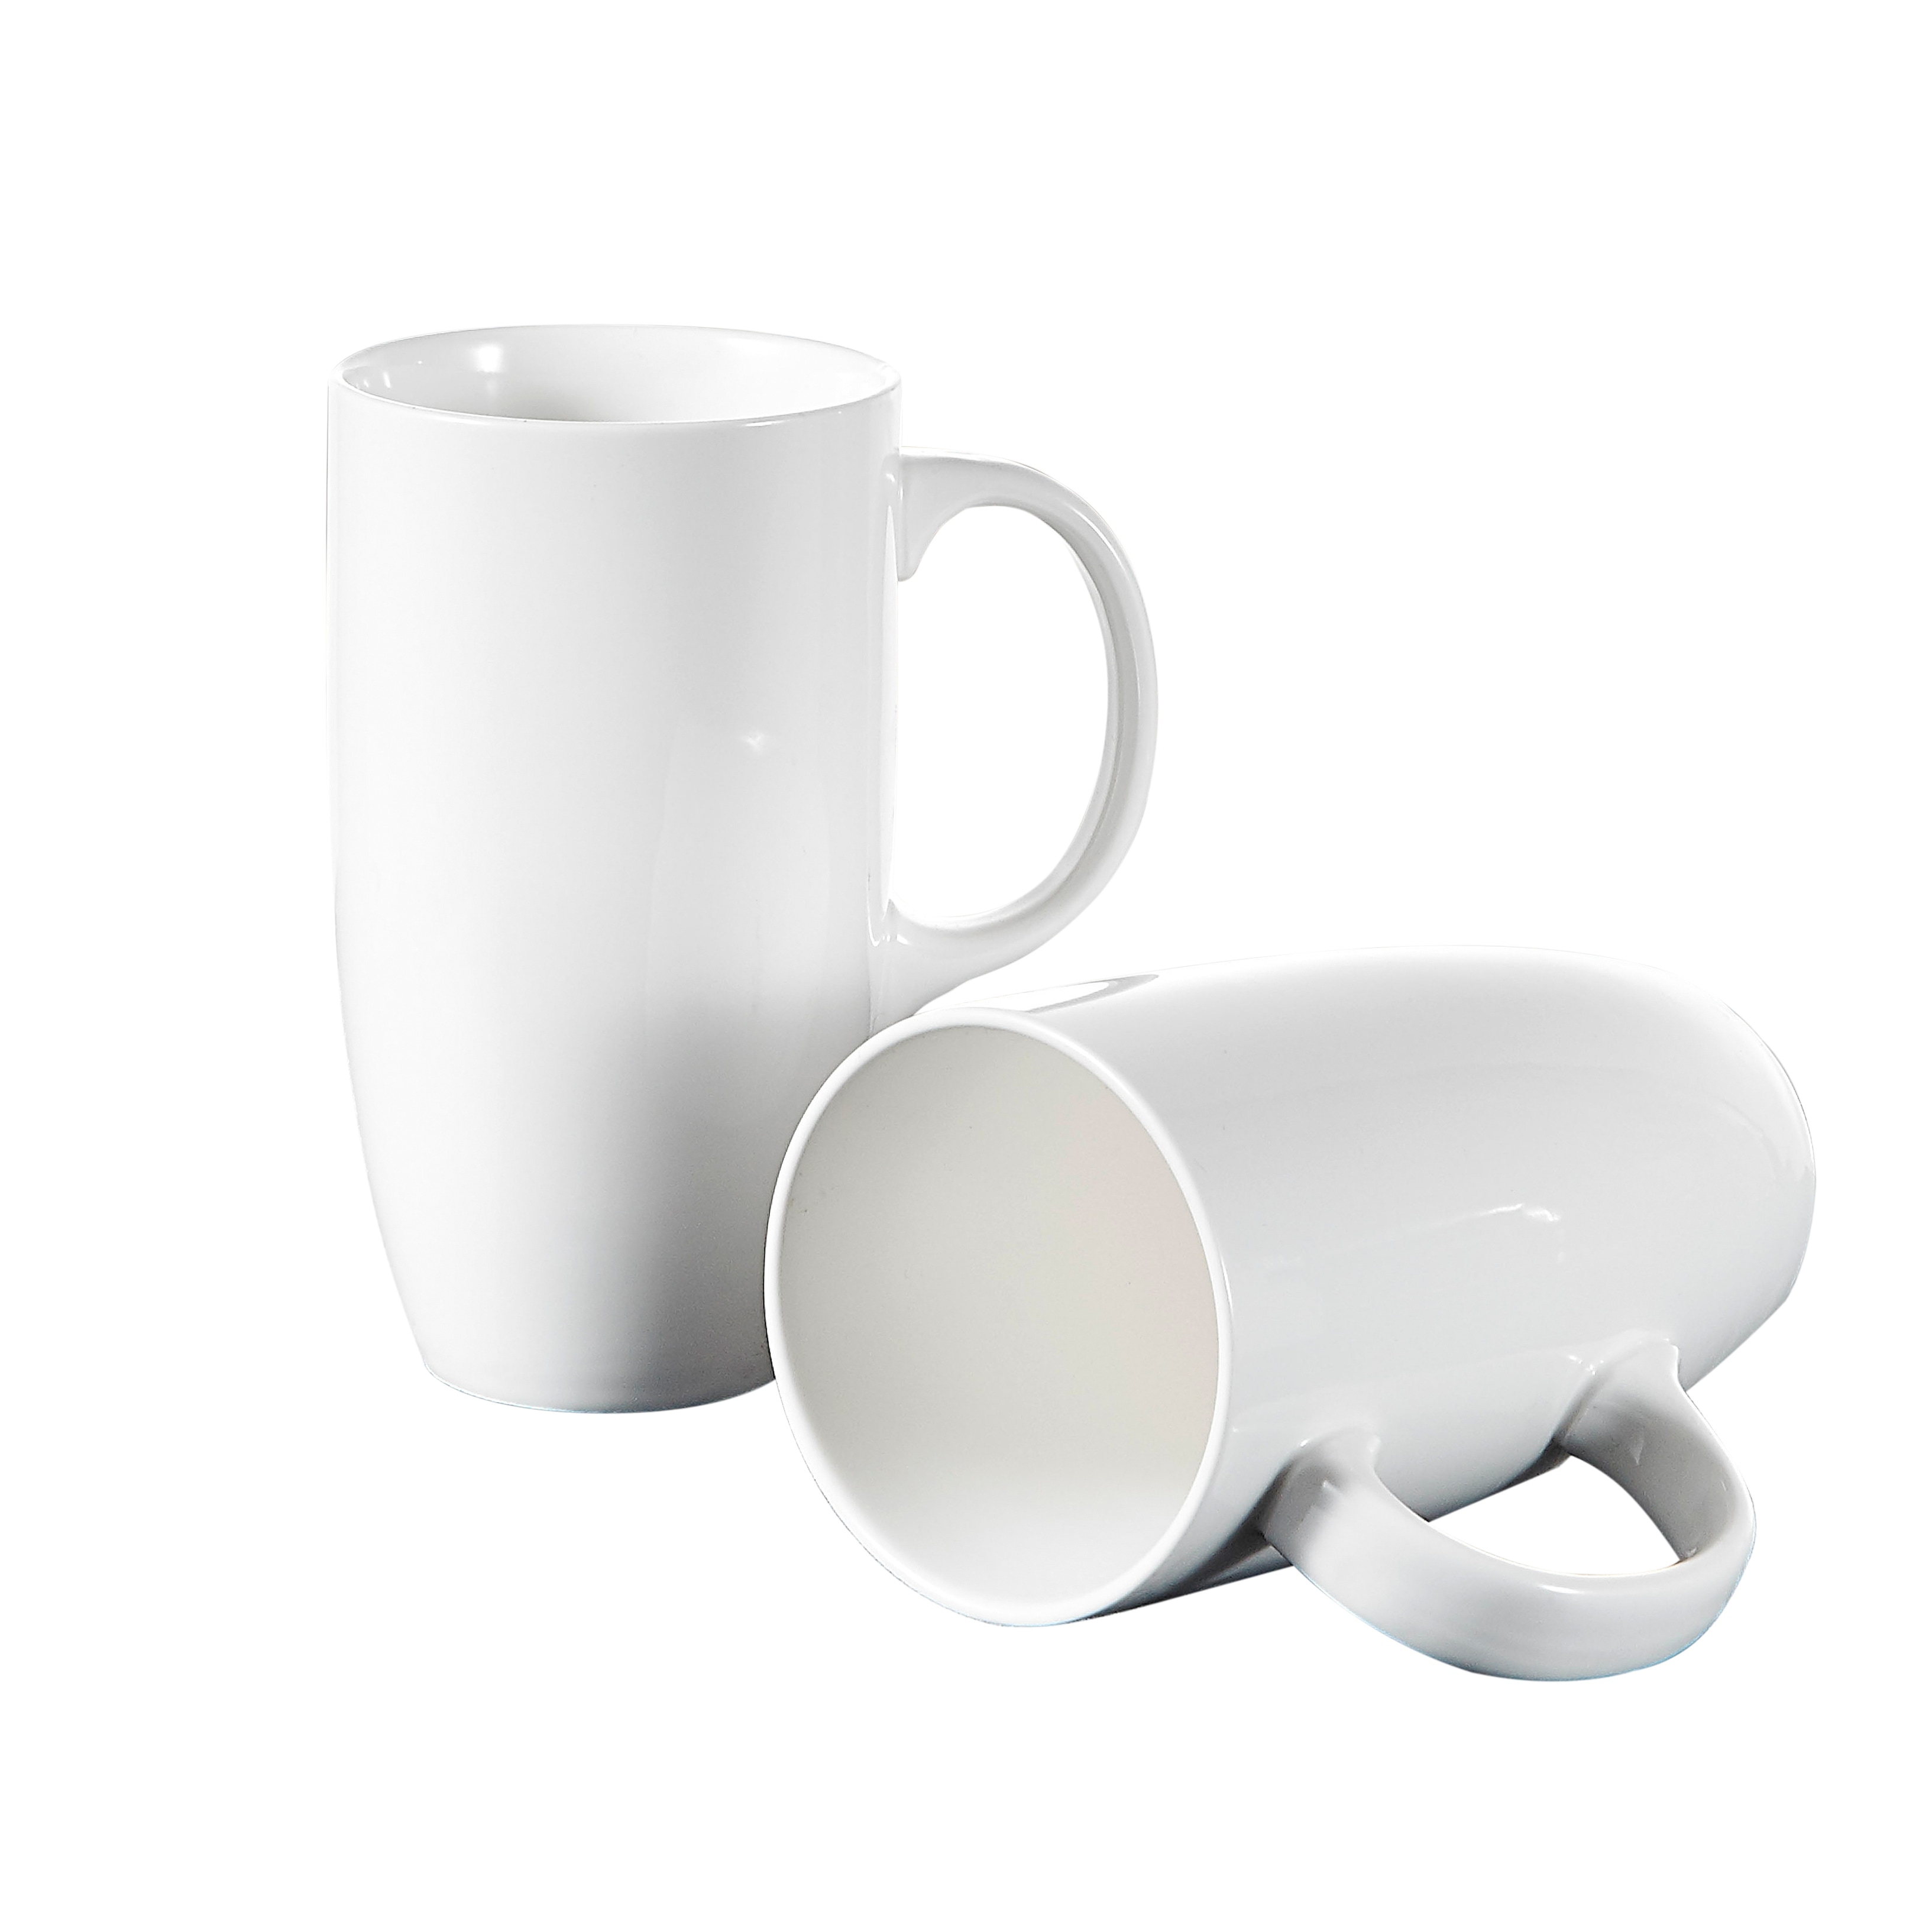 Panbado 18 oz. White Porcelain Mugs, Set of 2